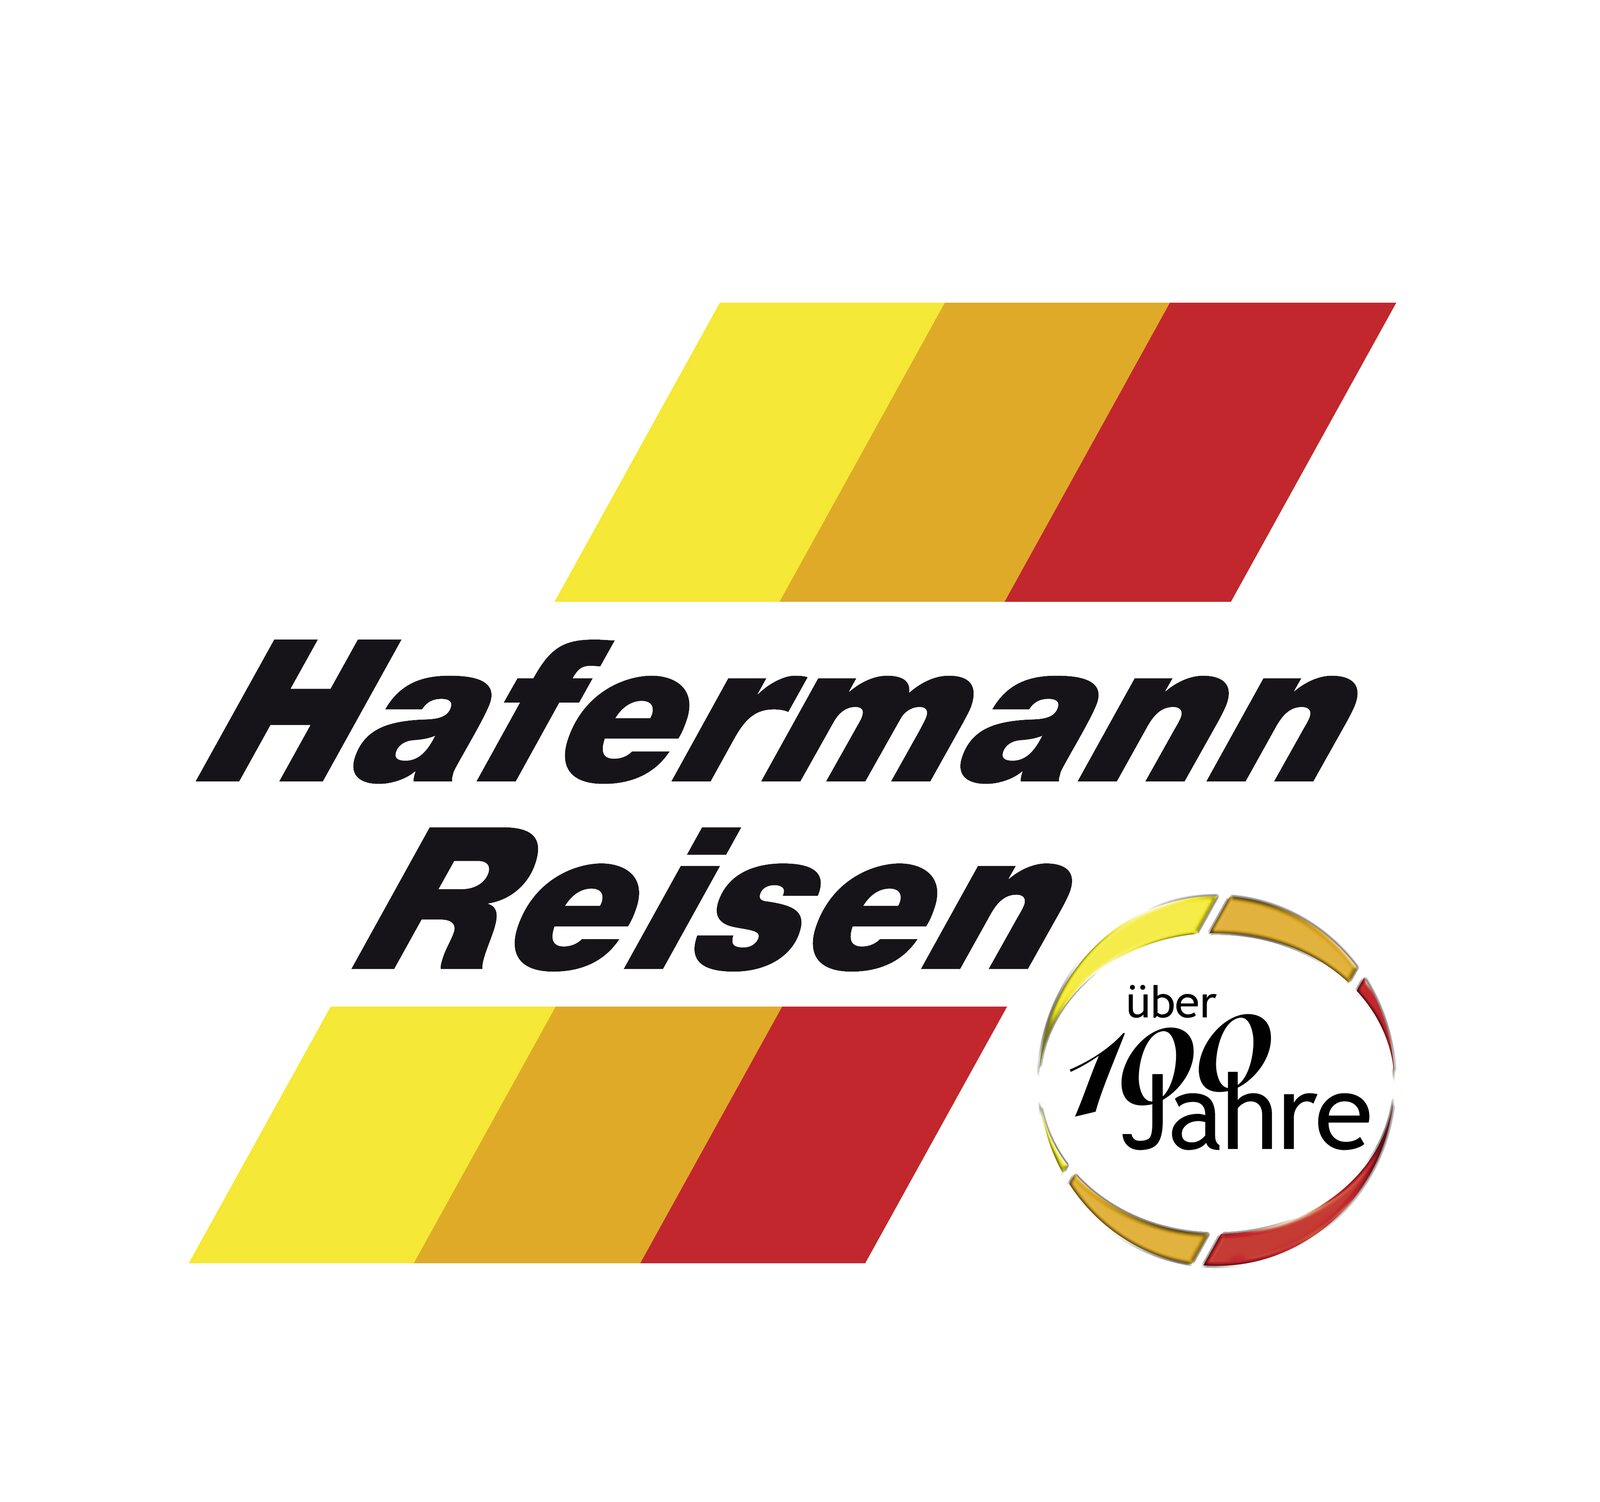 Hafermann Reisen Logo ueber 100 Jahre freigestellt.jpg